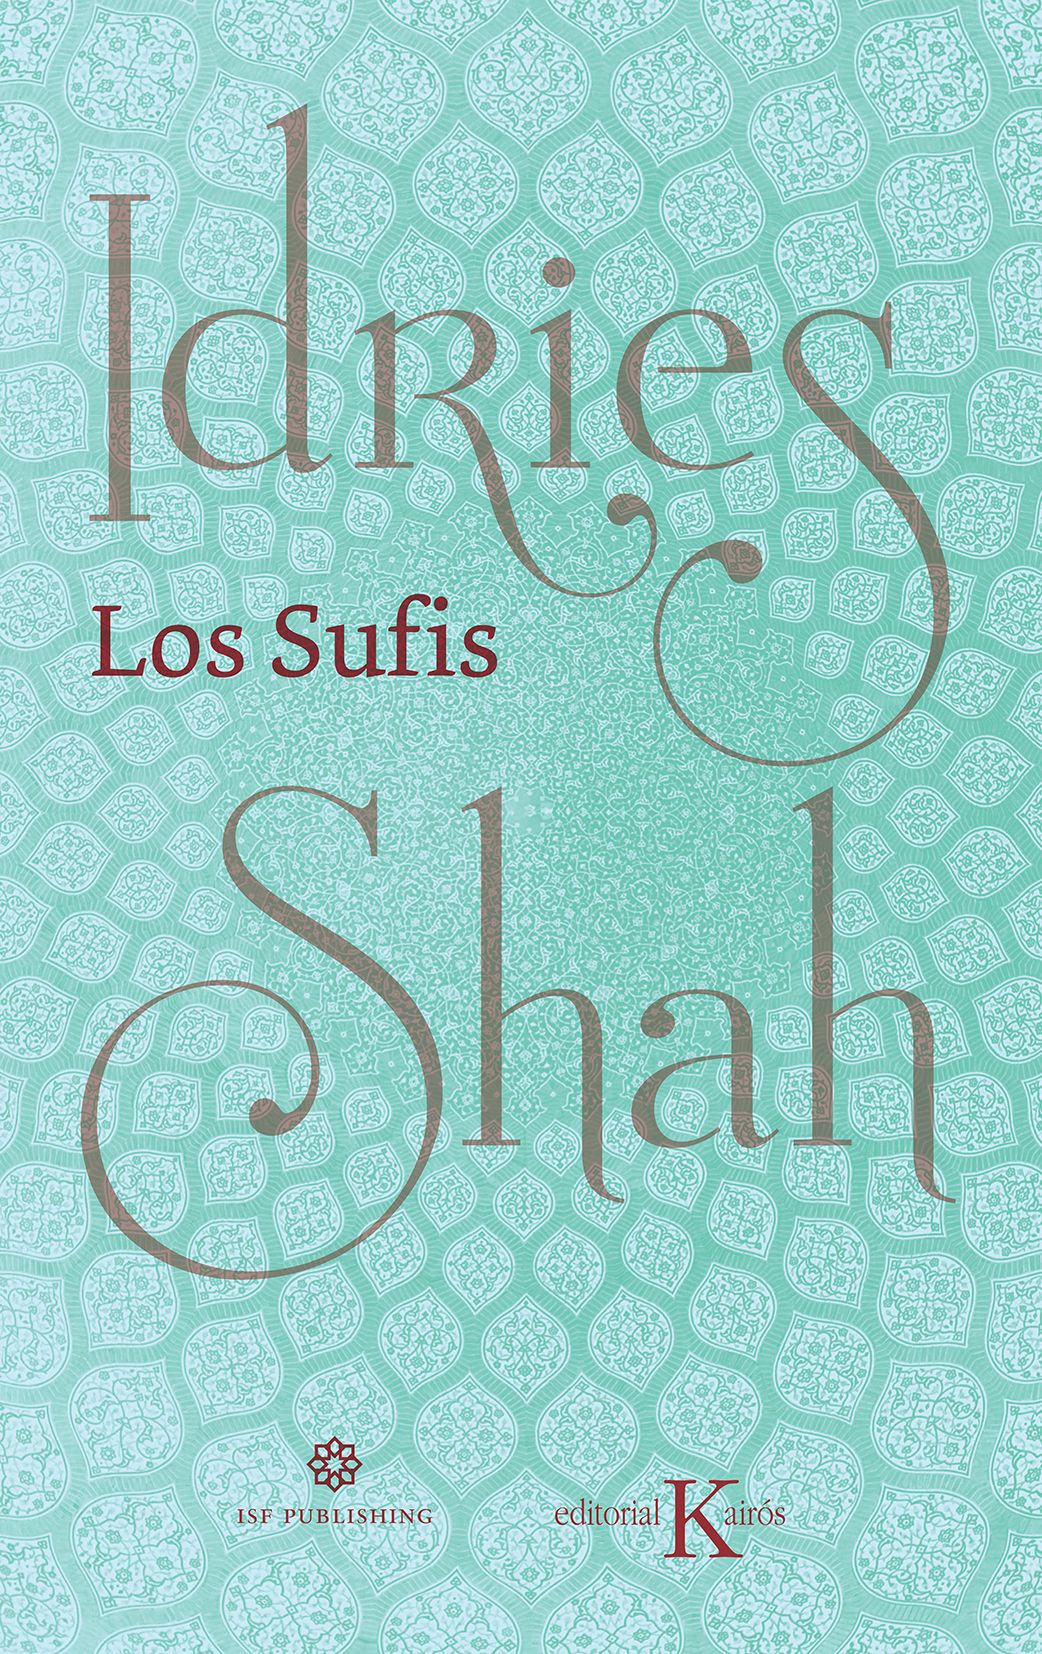 Los Sufis Nueva traducción (9788499887630)